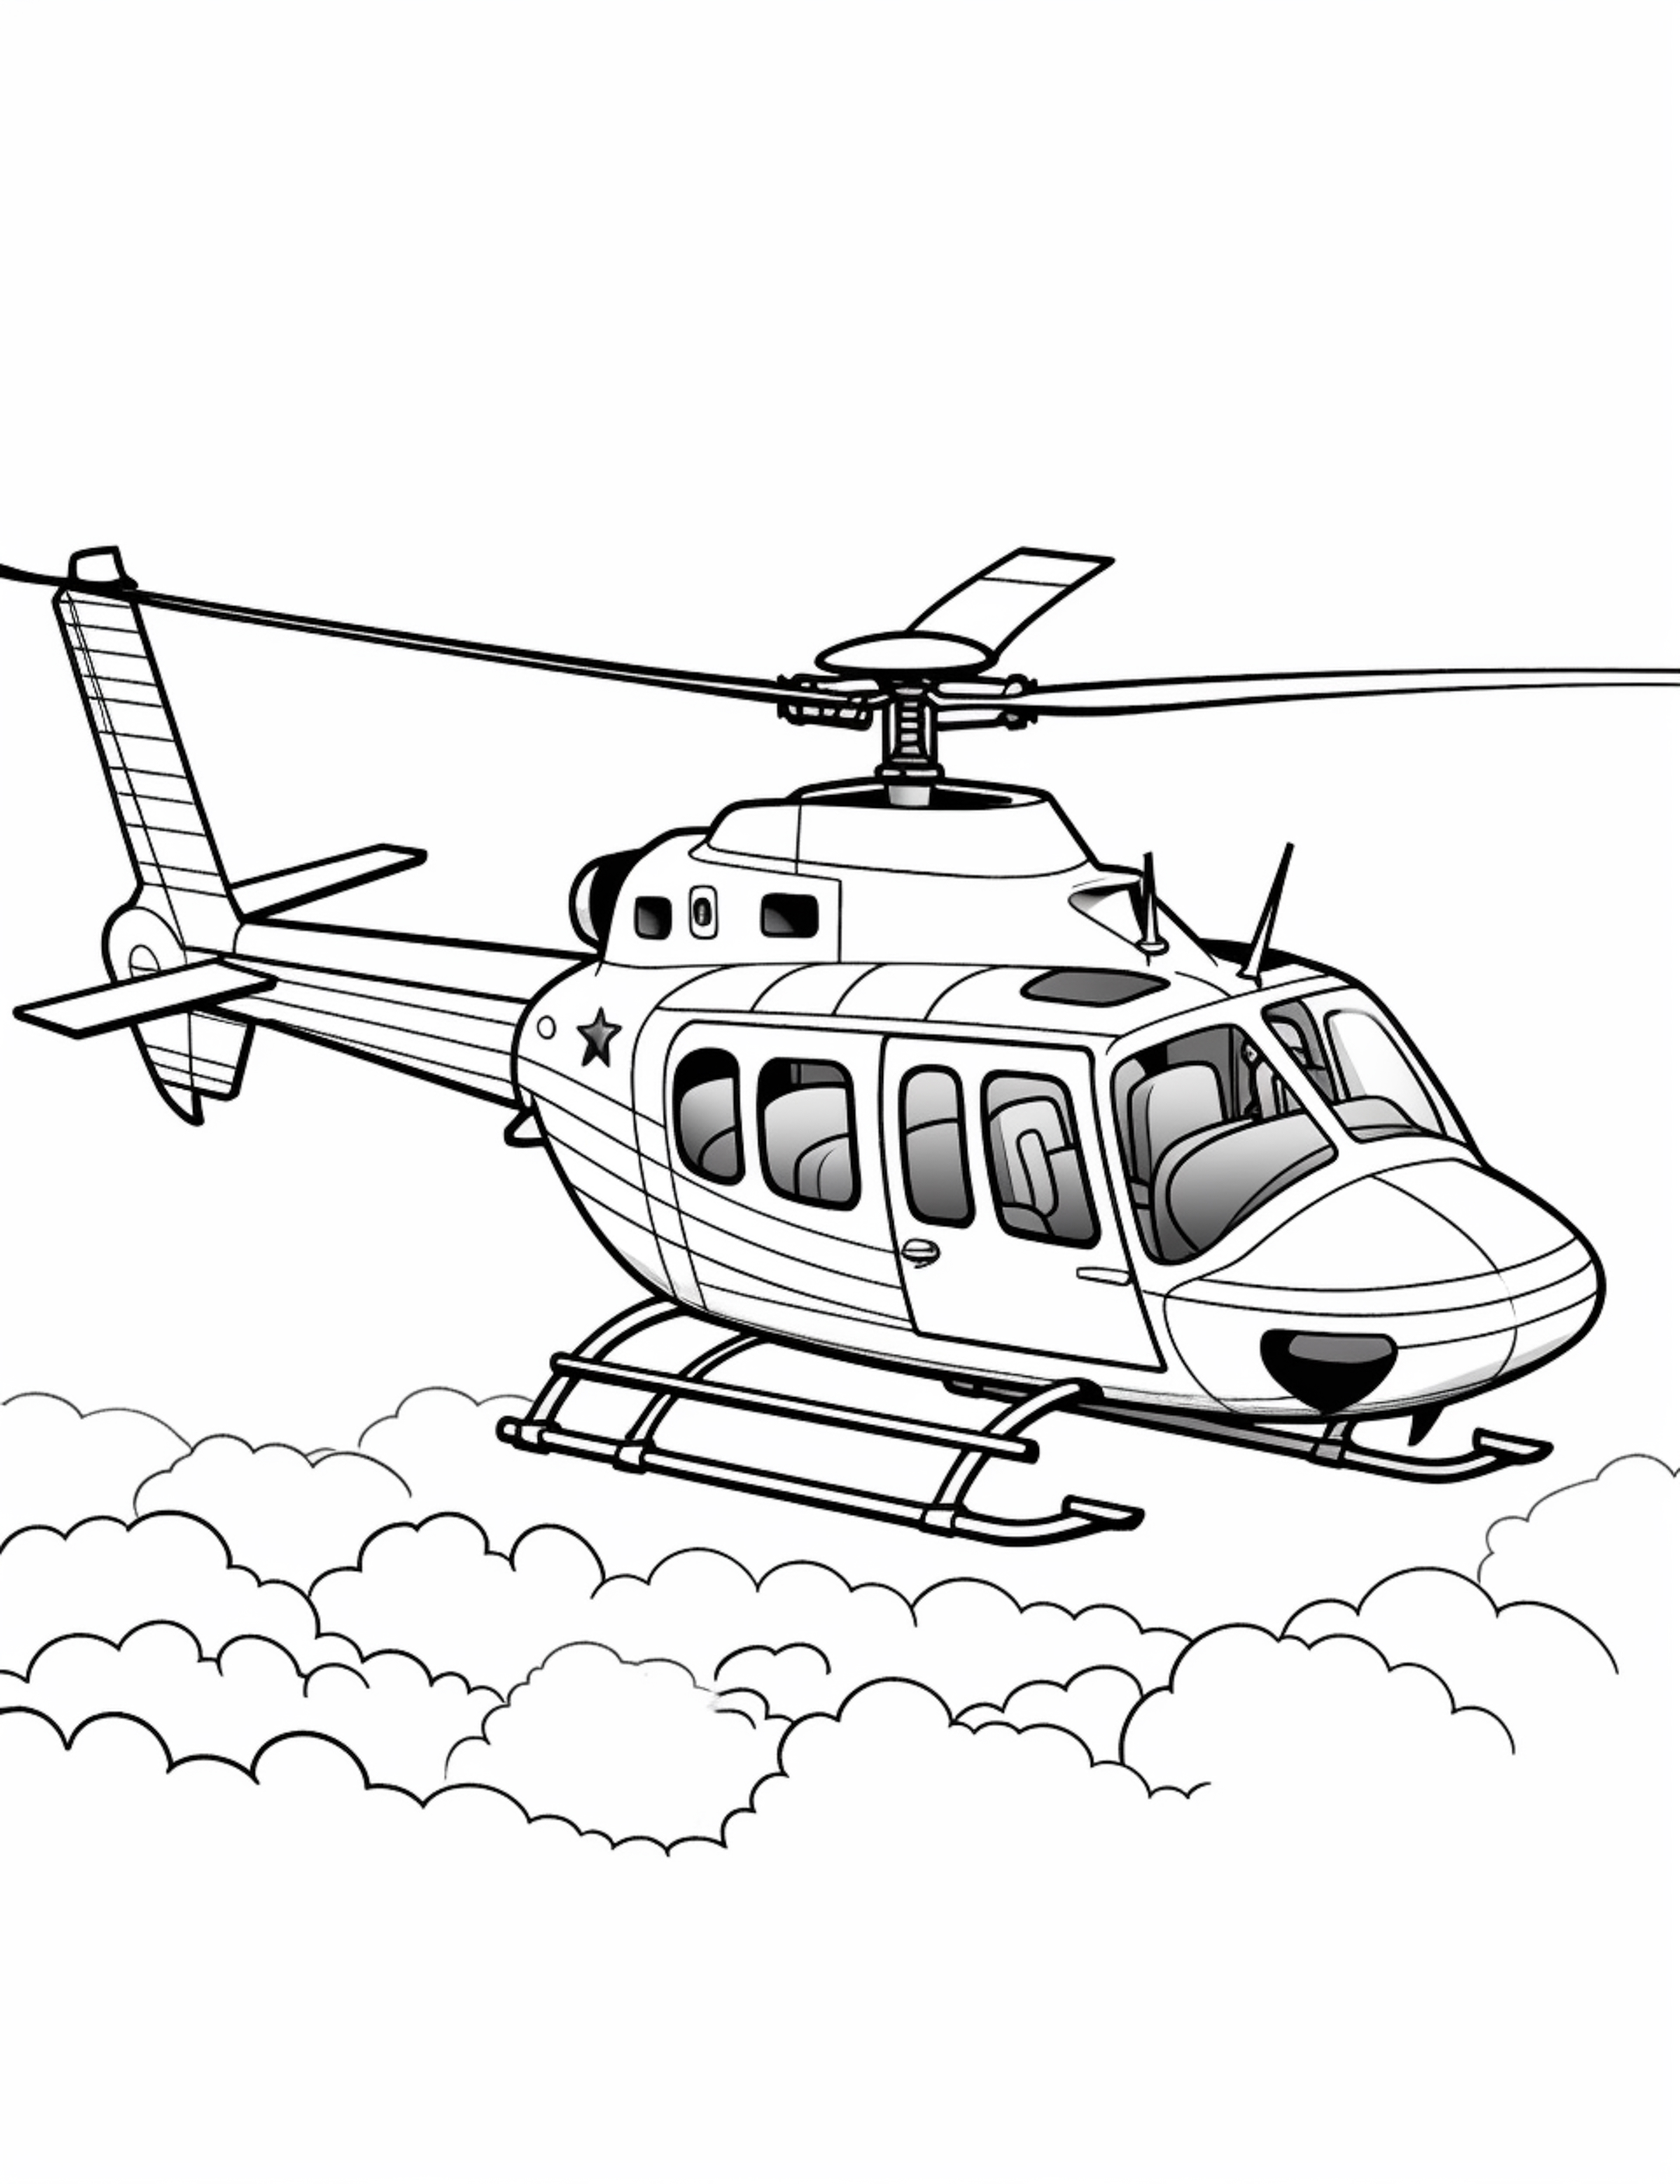 Раскраска вертолет «Ворон» в облаках формата А4 в высоком качестве